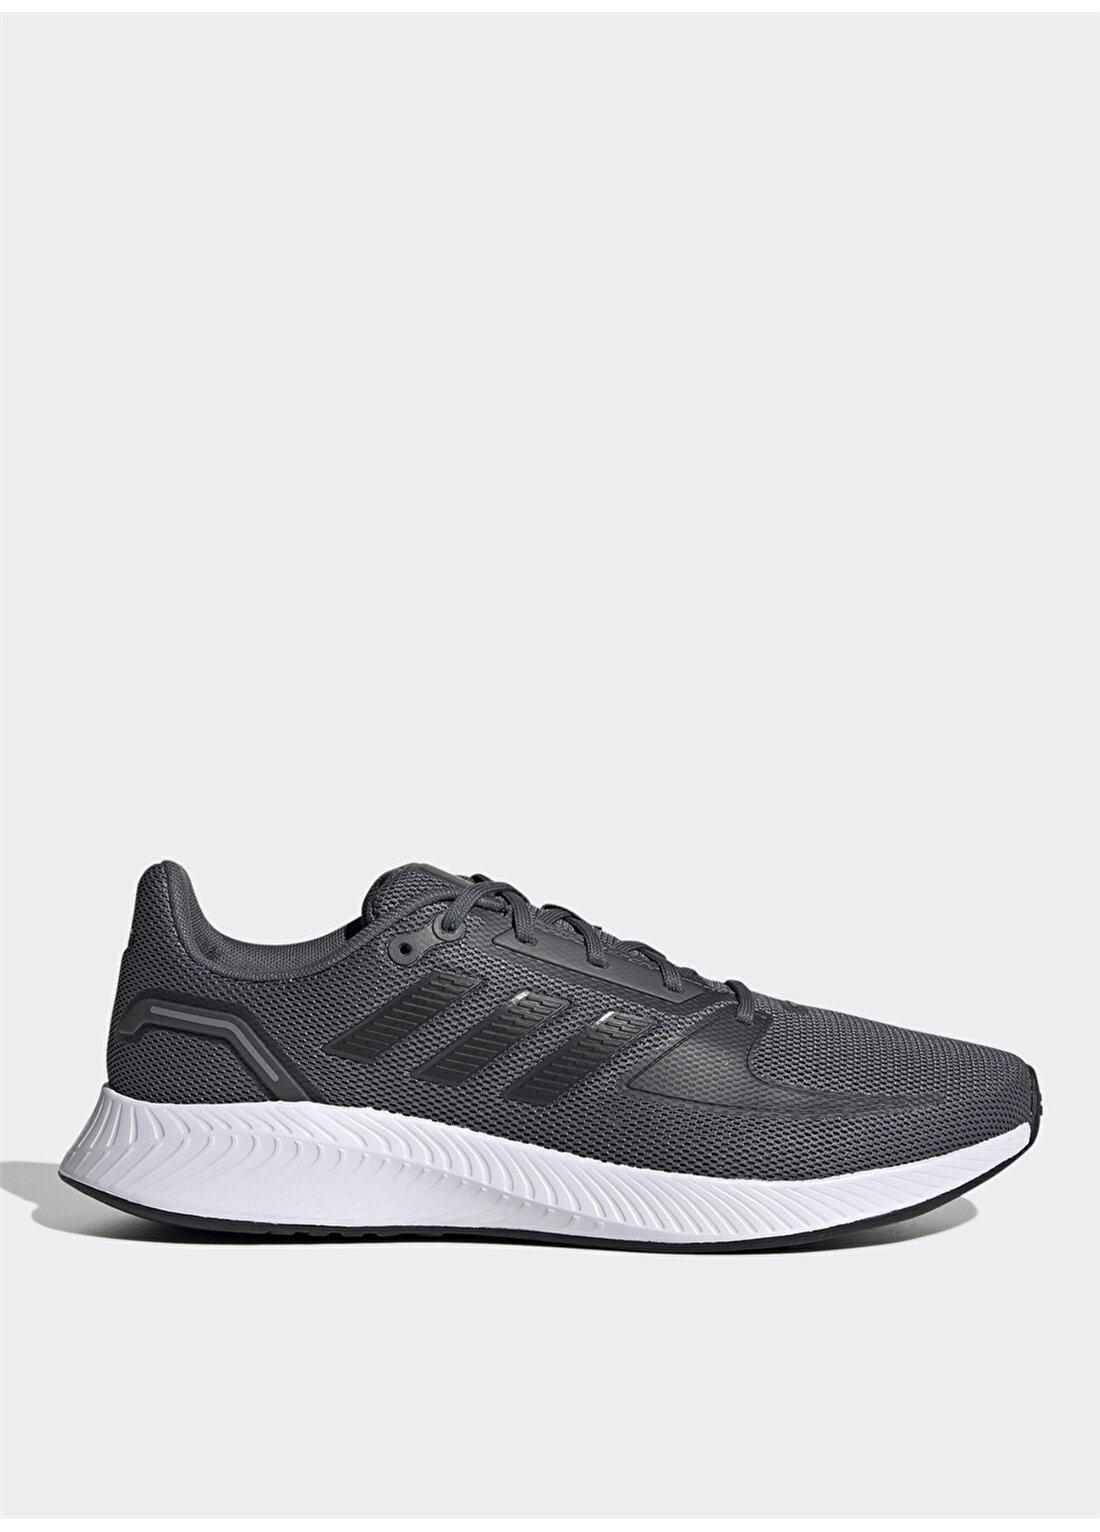 Adidas Gri - Siyah Erkek Koşu Ayakkabısı FY8741 RUNFALCON 2